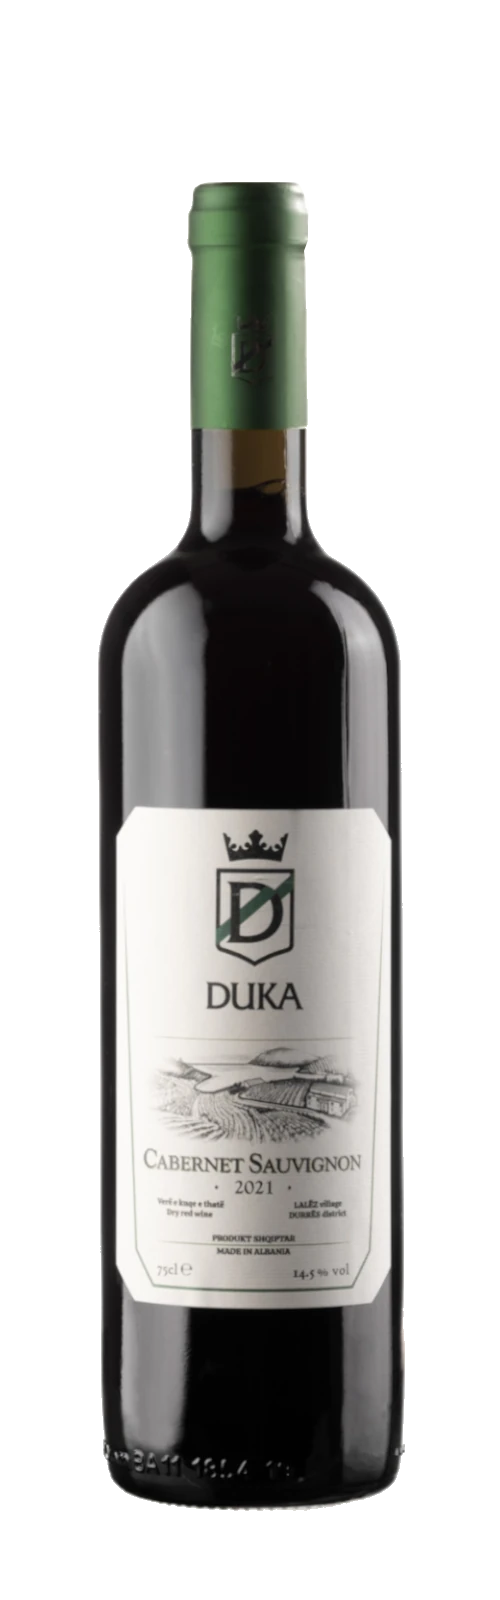 Cabernet Sauvignon 2021 - 14,5% vol - DUKA Winery